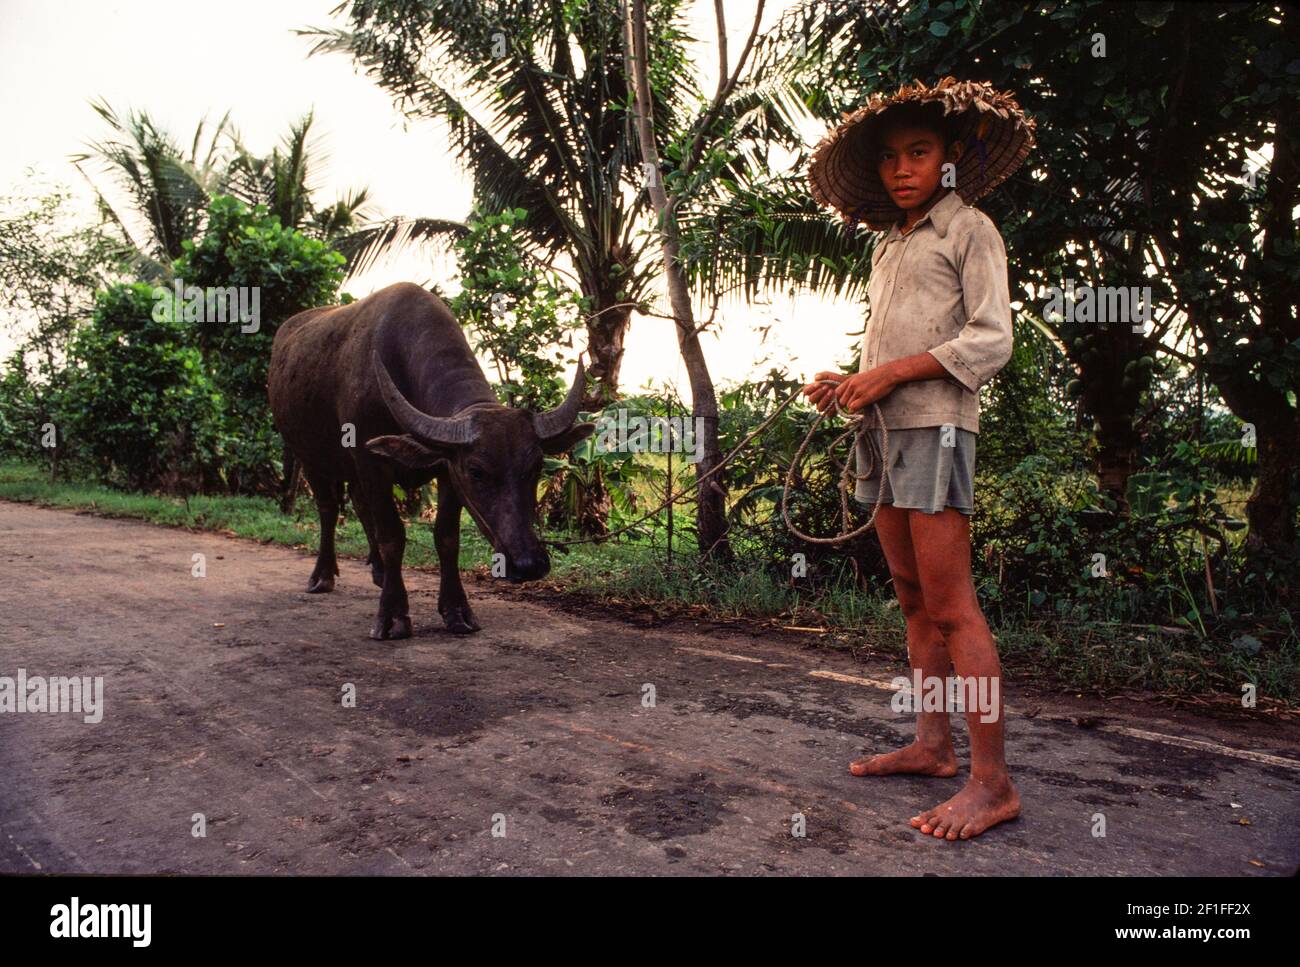 Un ragazzo giovane che guida un bue, Vietnam rurale del Sud. Nella stagione del raccolto i buoi vengono utilizzati per arare le risaie e per trascinare i rulli per la trebbiatura del riso. Foto Stock